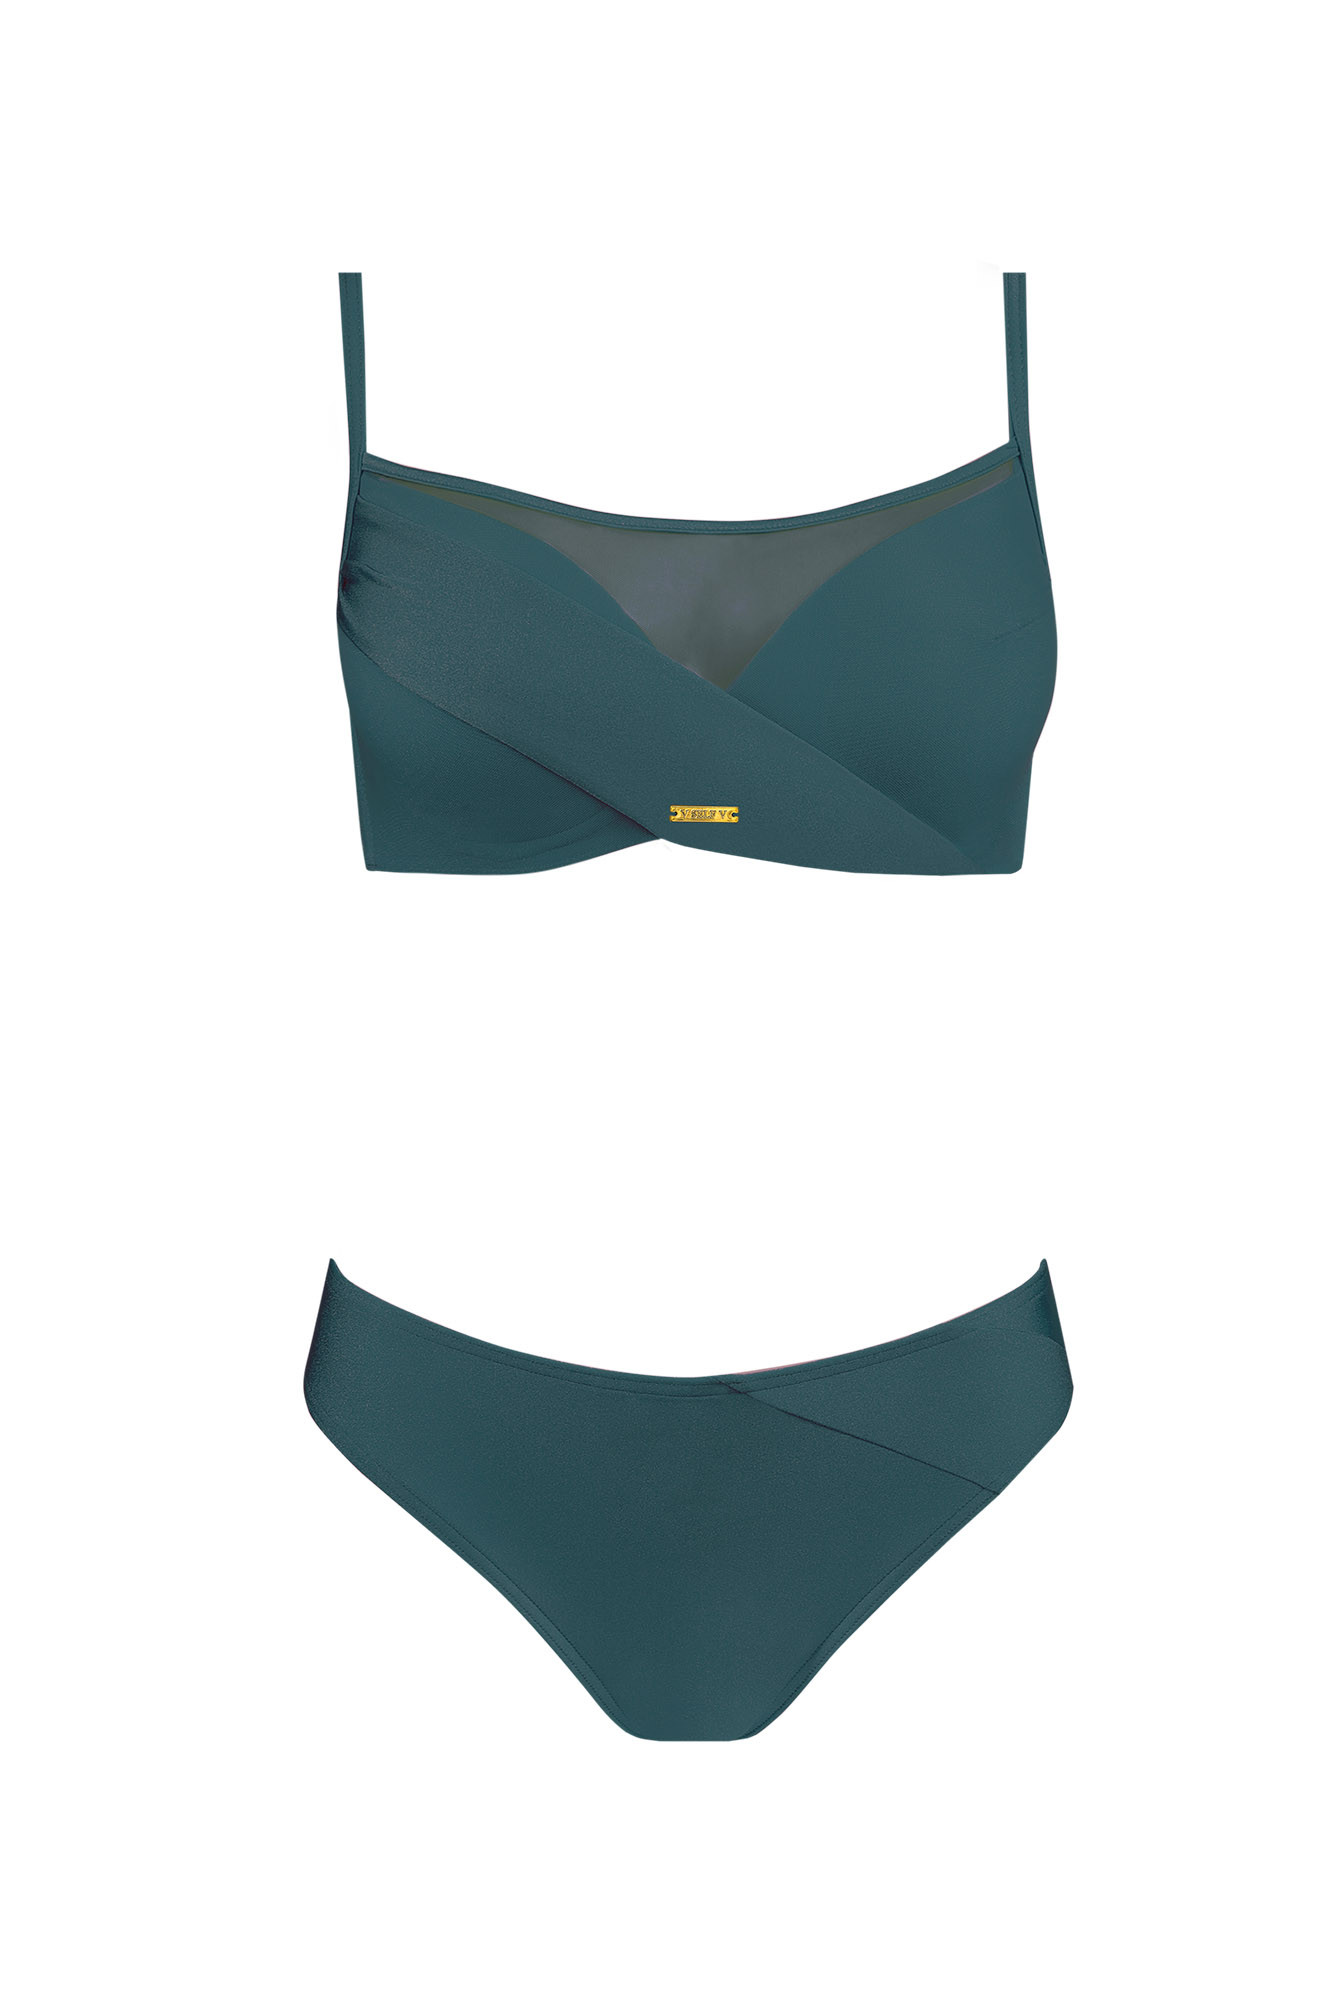 Dámské dvoudílné plavky Fashion10 S1002N-7 tm. zelené - Self 44C